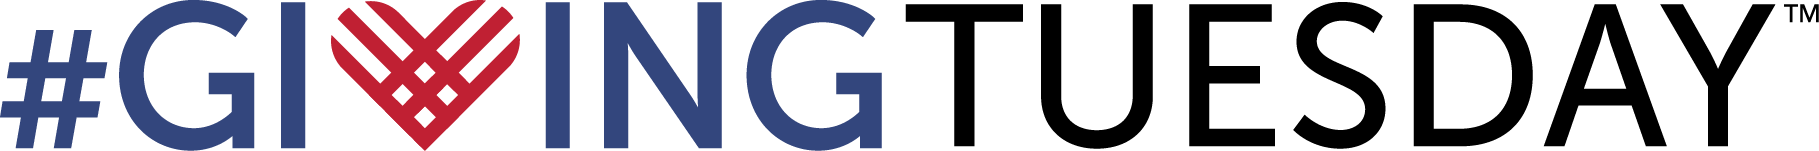 gt-logo-color.png